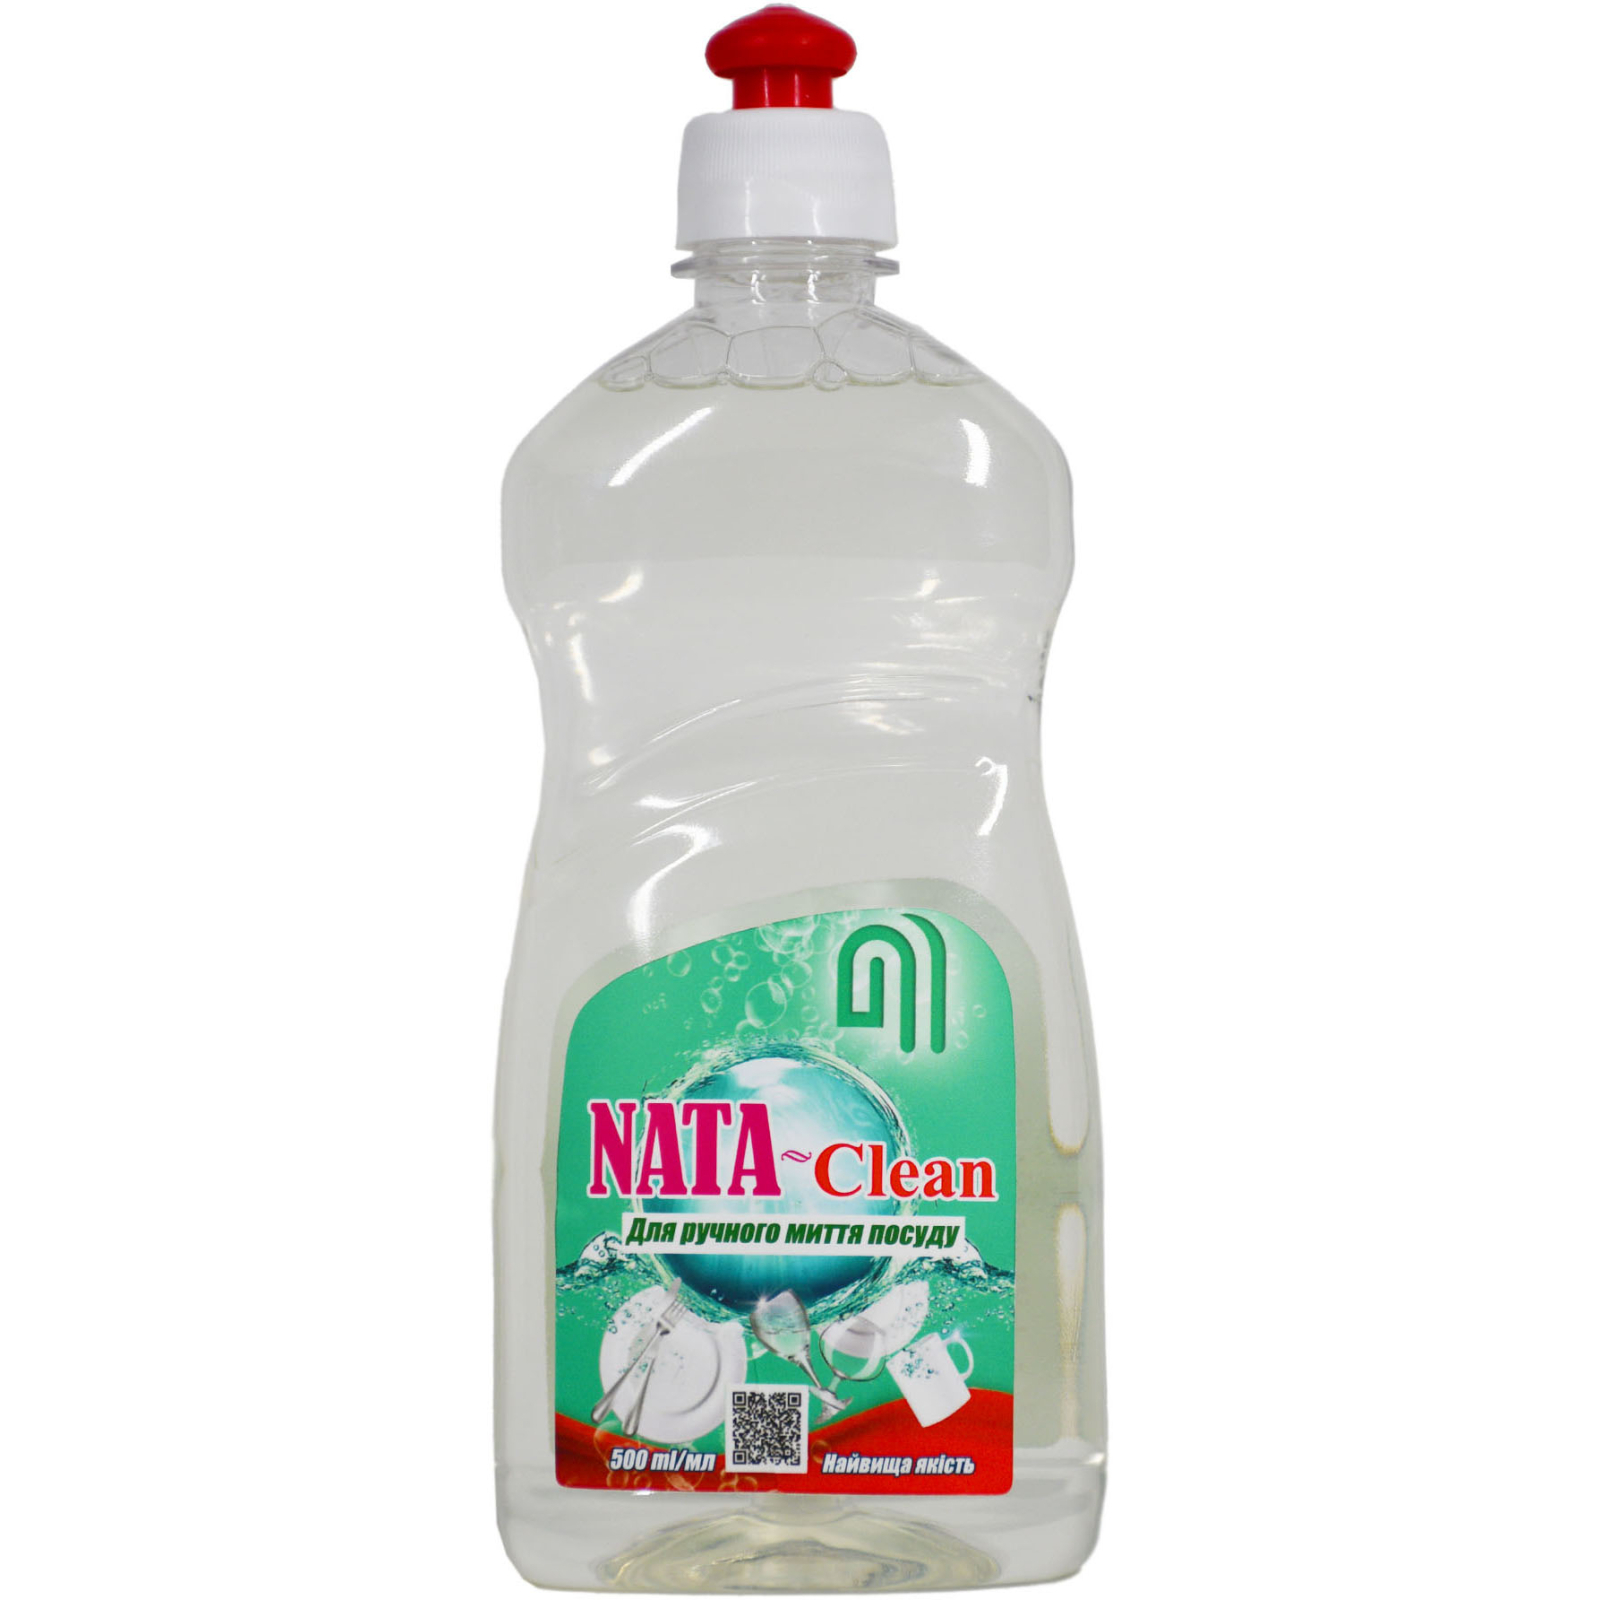 Средство для ручного мытья посуды Nata Group Nata-Clean Без аромата пуш-пул 500 мл (4823112600700)